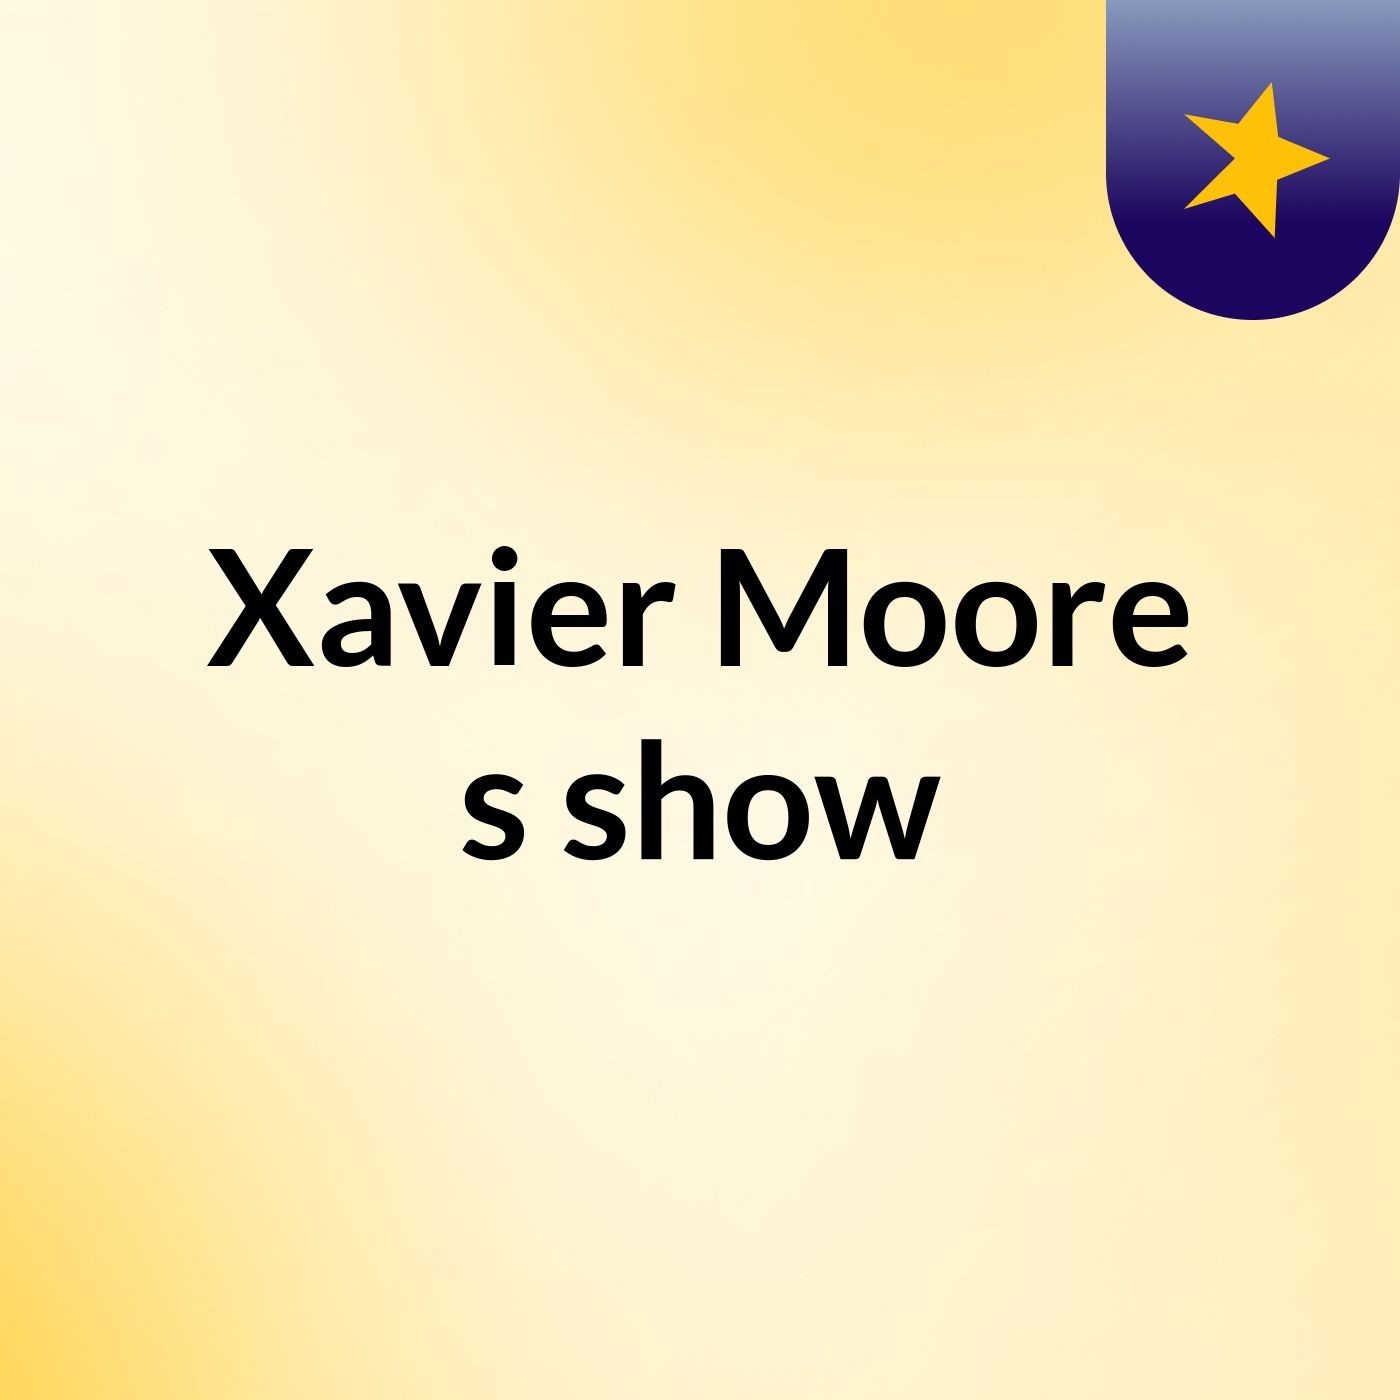 Xavier Moore's show